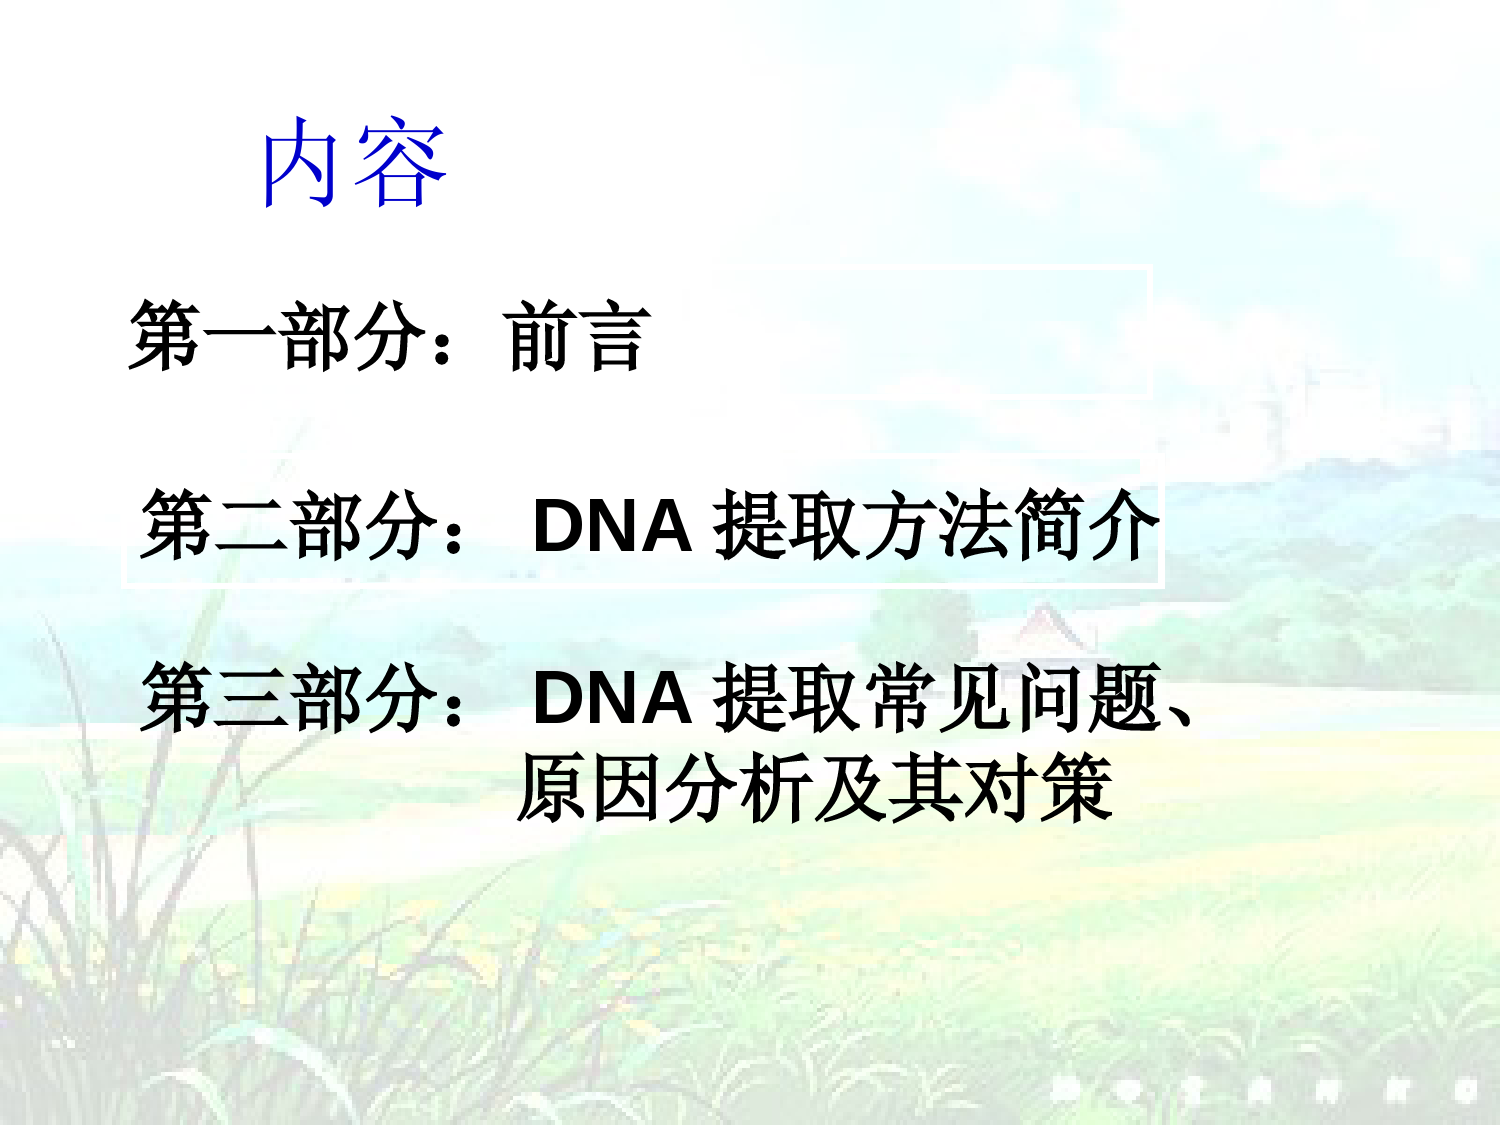 DNA提取及常见问题分析 (1)